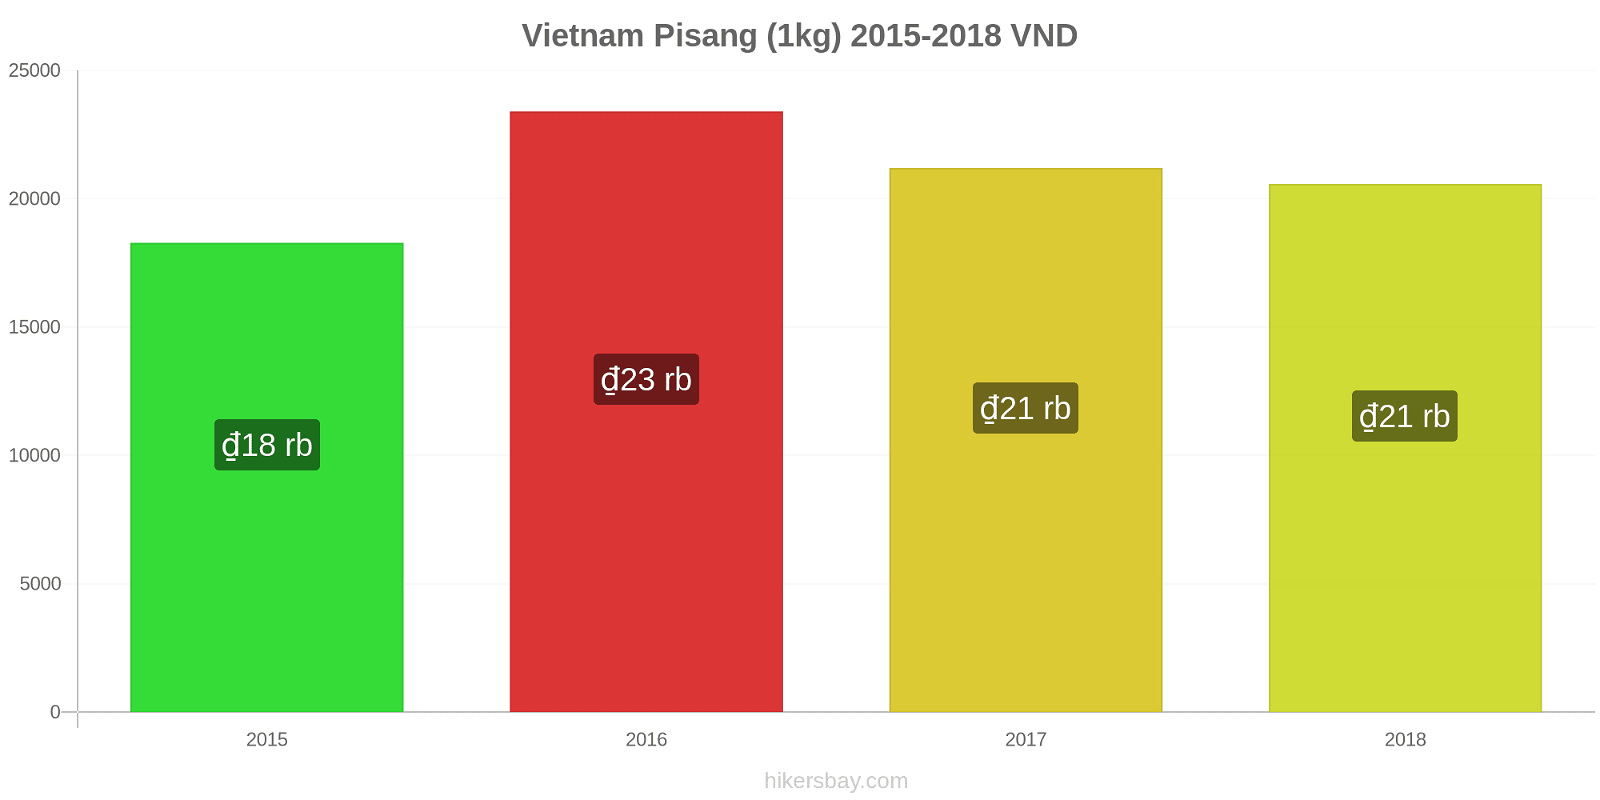 Vietnam perubahan harga Pisang (1kg) hikersbay.com